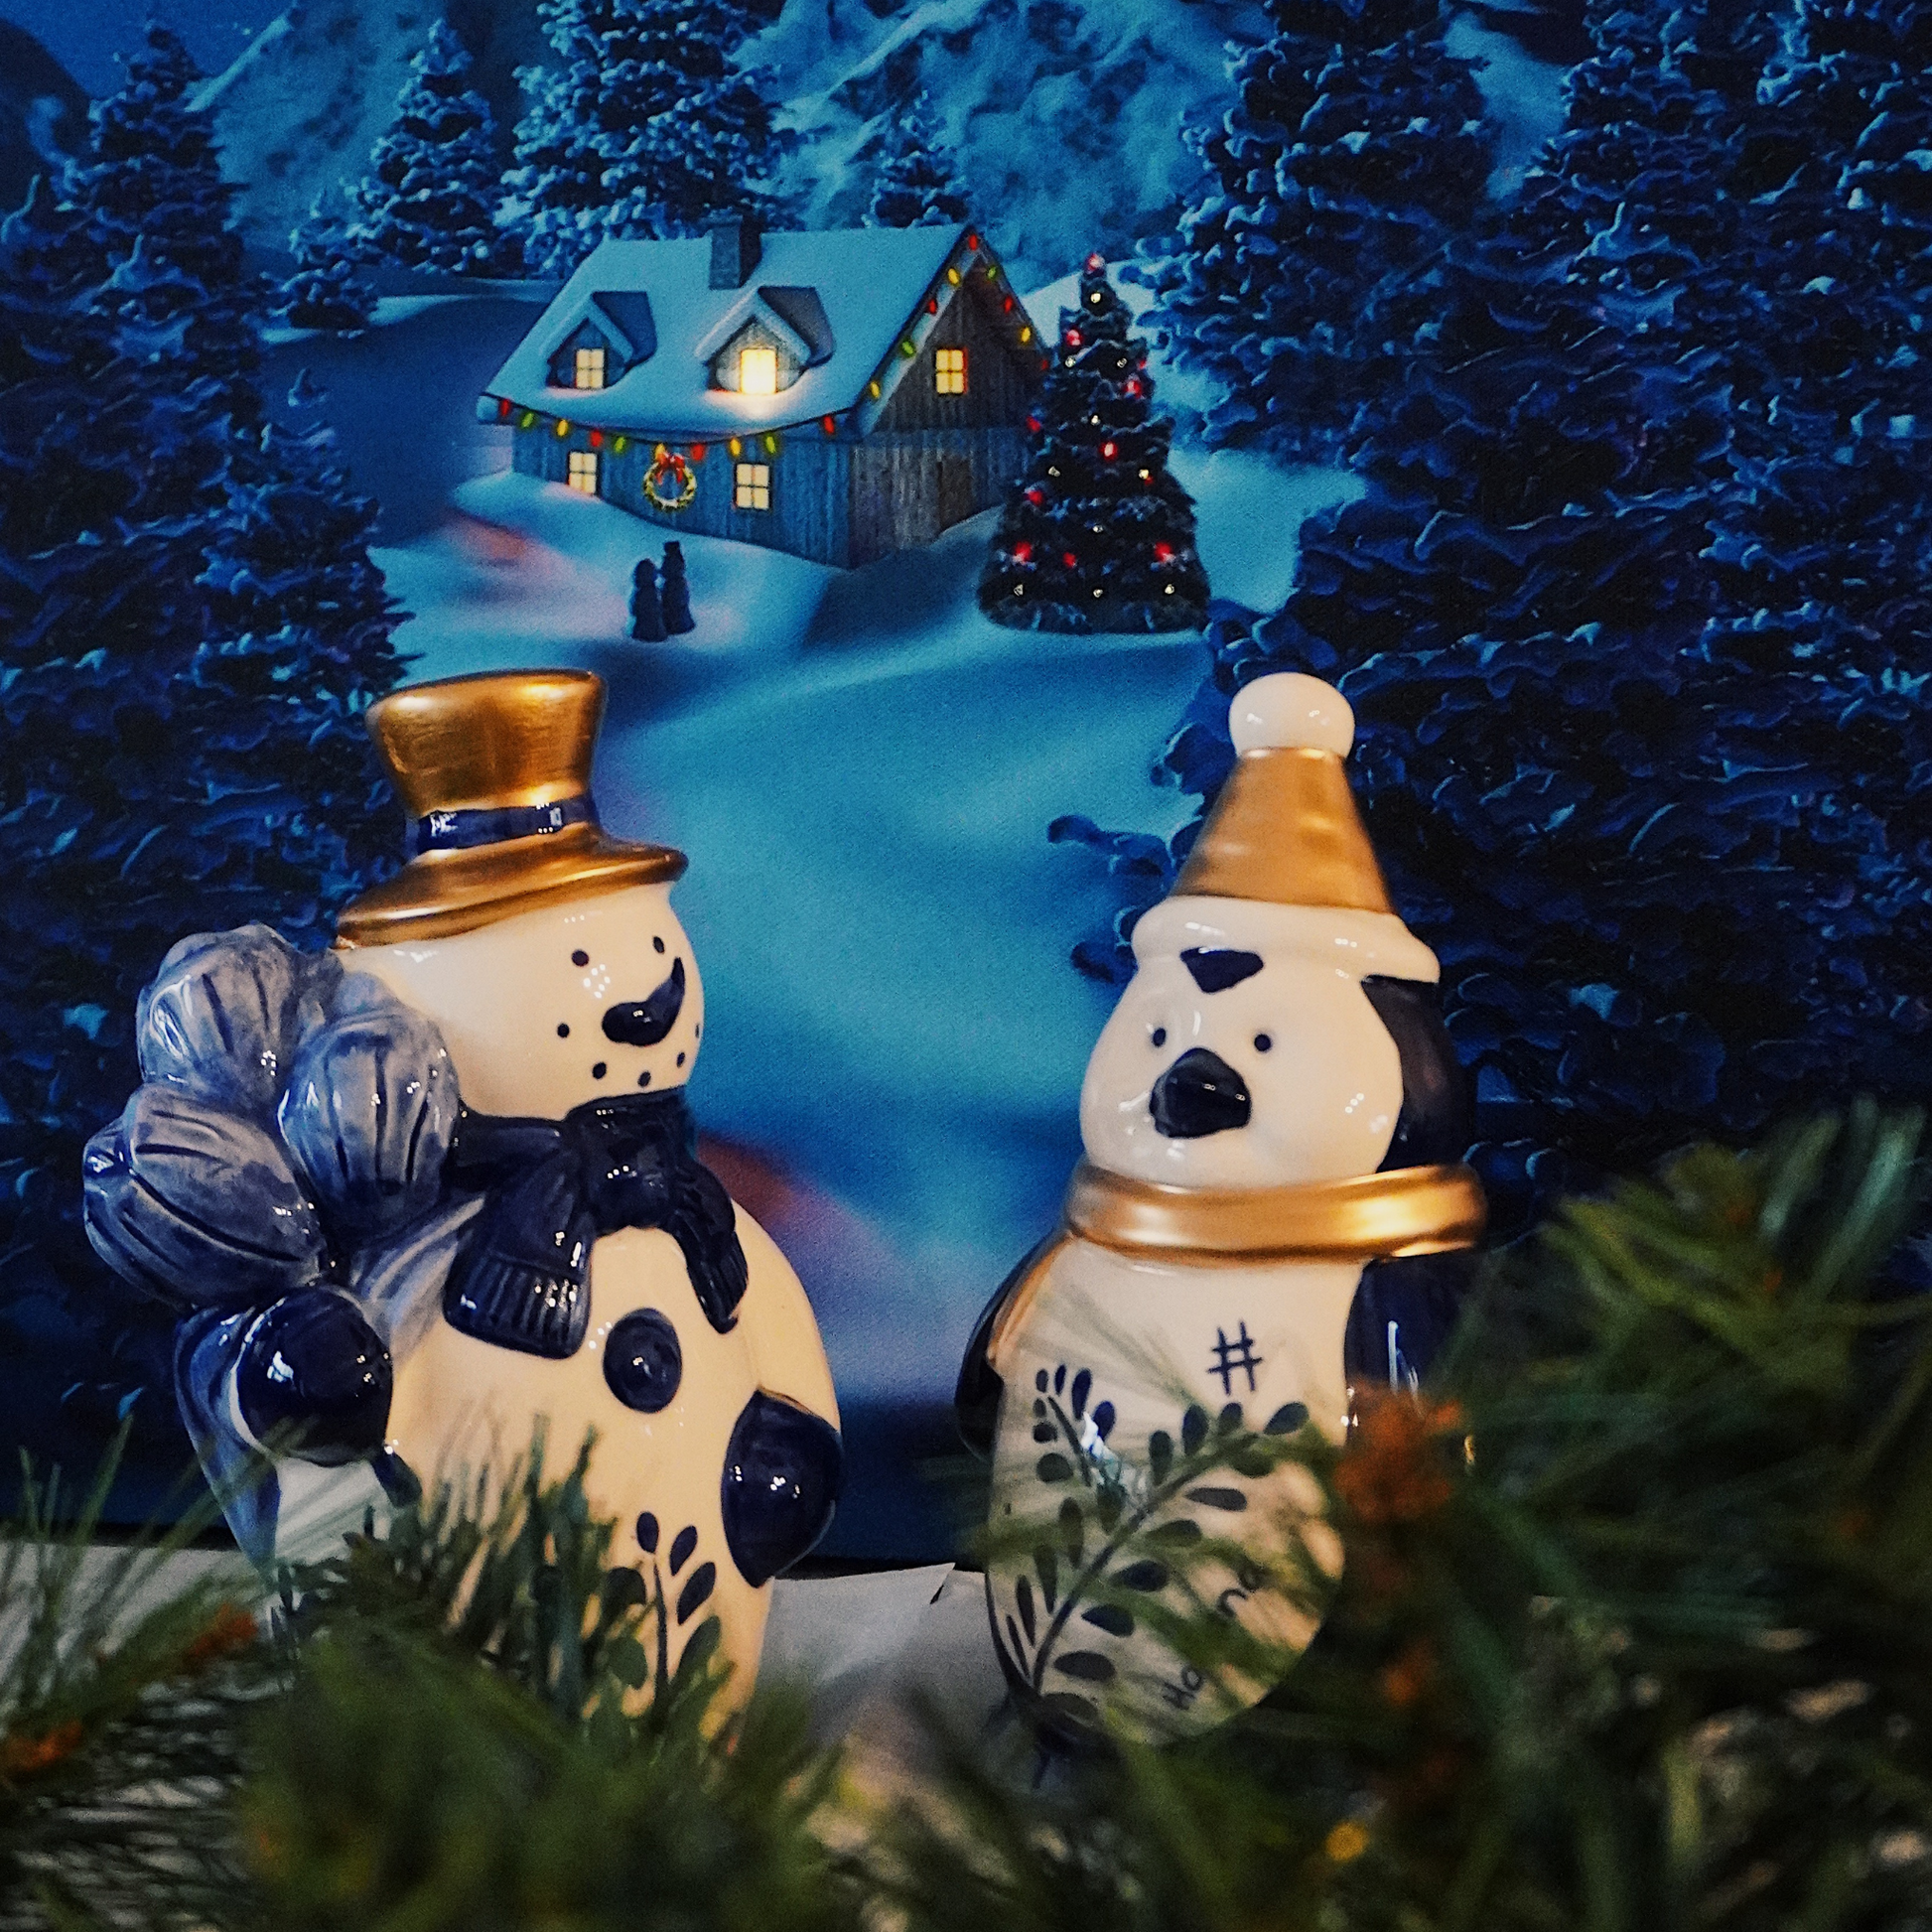 sneeuwpop met holland tekst erop en tulpen in zijn hand handschoenen aan gouden muts van porselein gemaakt breekbaar goed kerstcadeau kerst 2022 delfts blauw kerstmis met keramiek pinguin met goud muts en sjaal